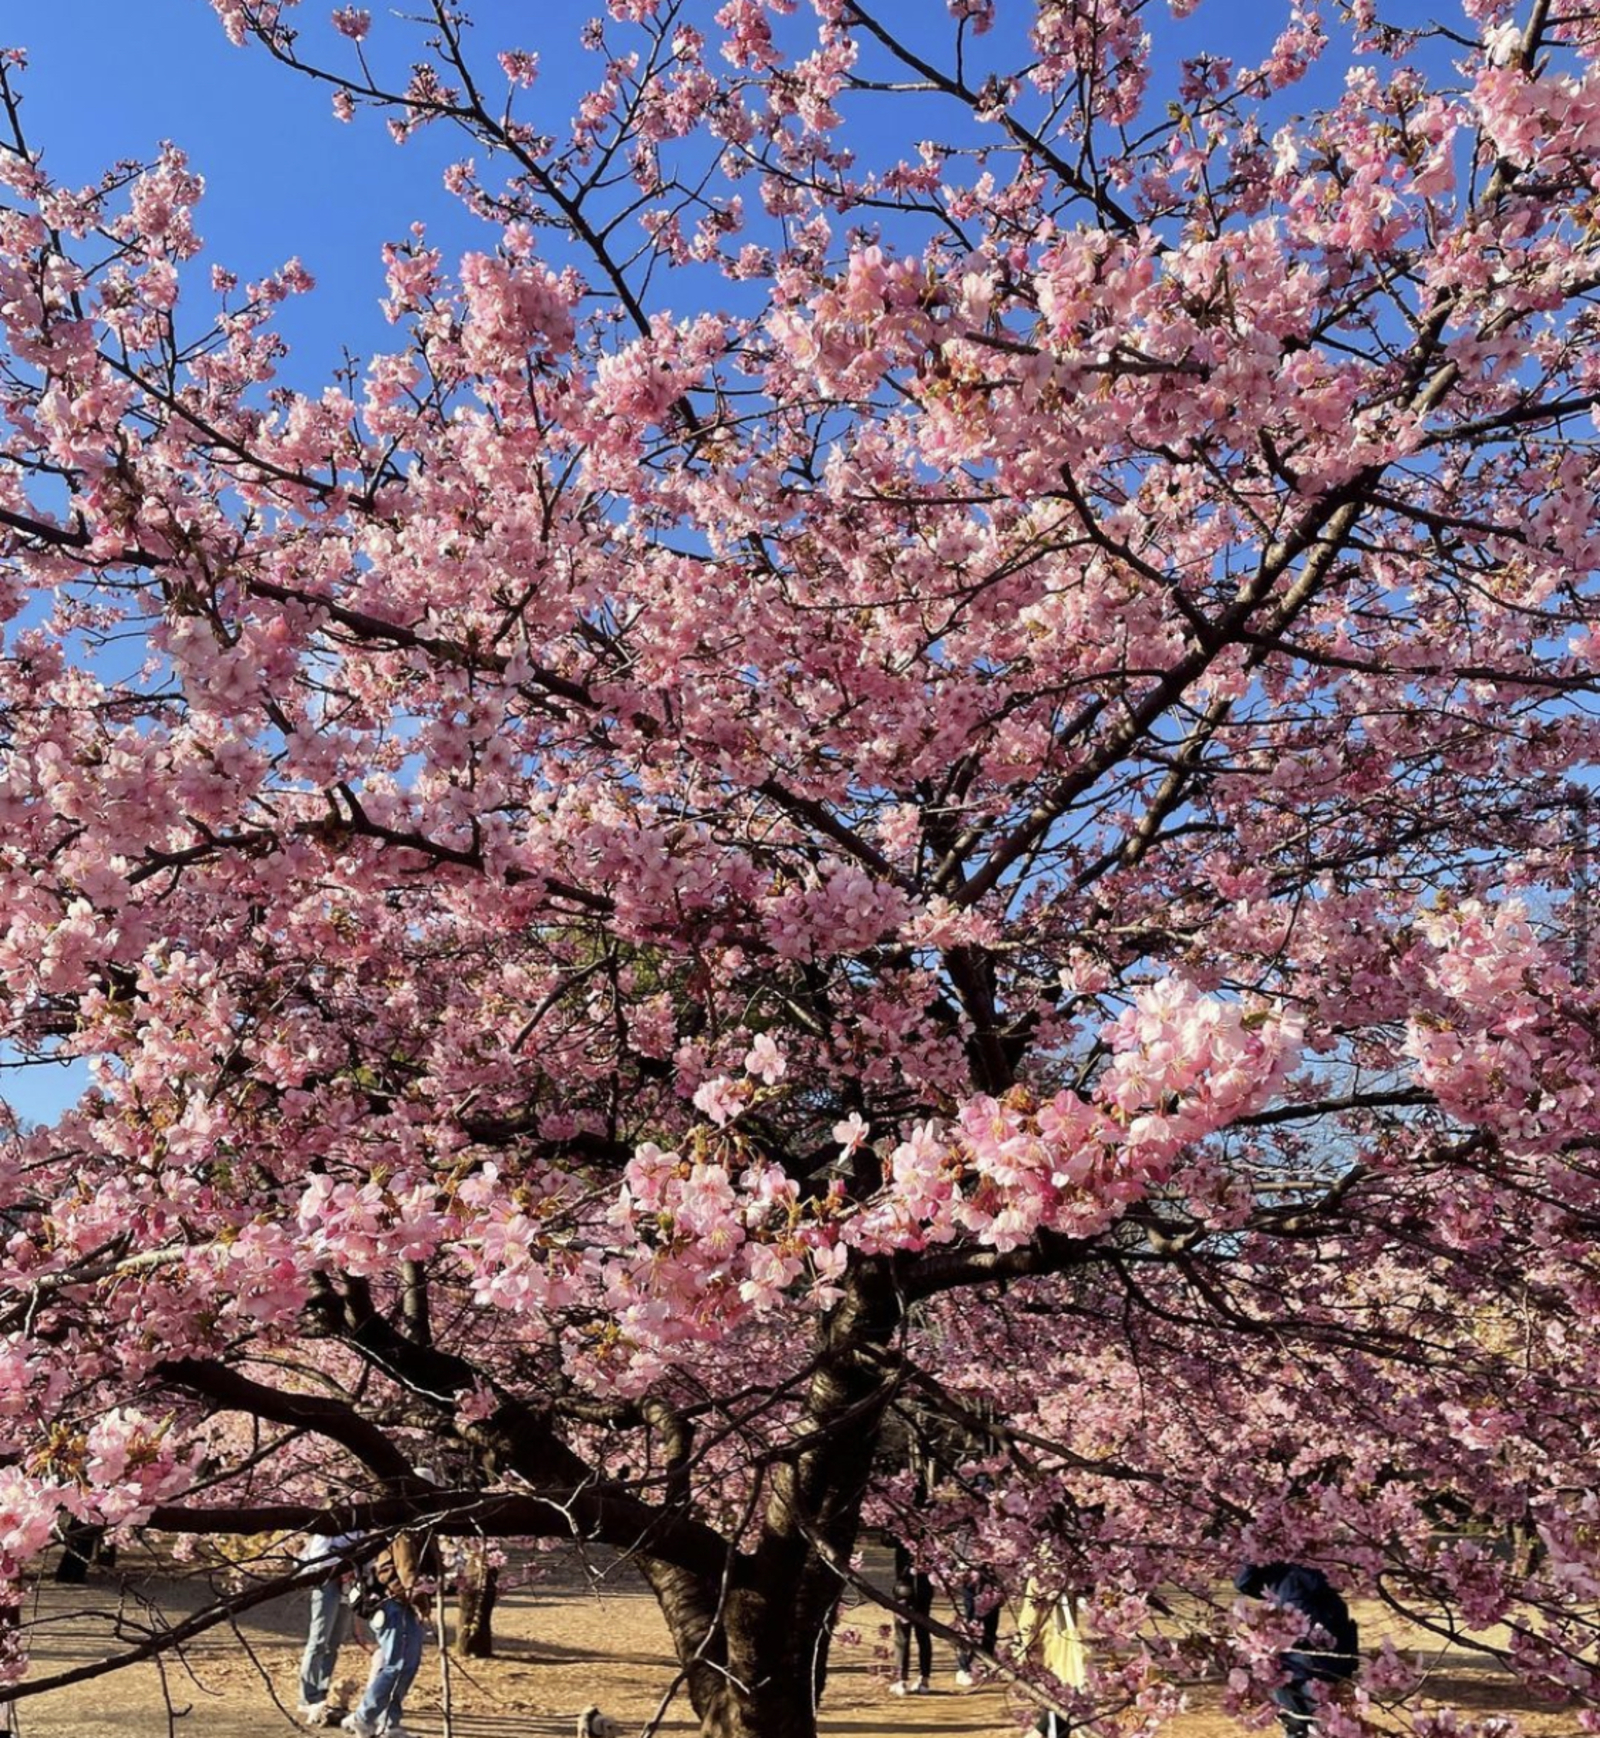 【満員締切🙇‍♂️】4/1(土)📷代々木公園に桜の写真撮りに行きましょう🌸